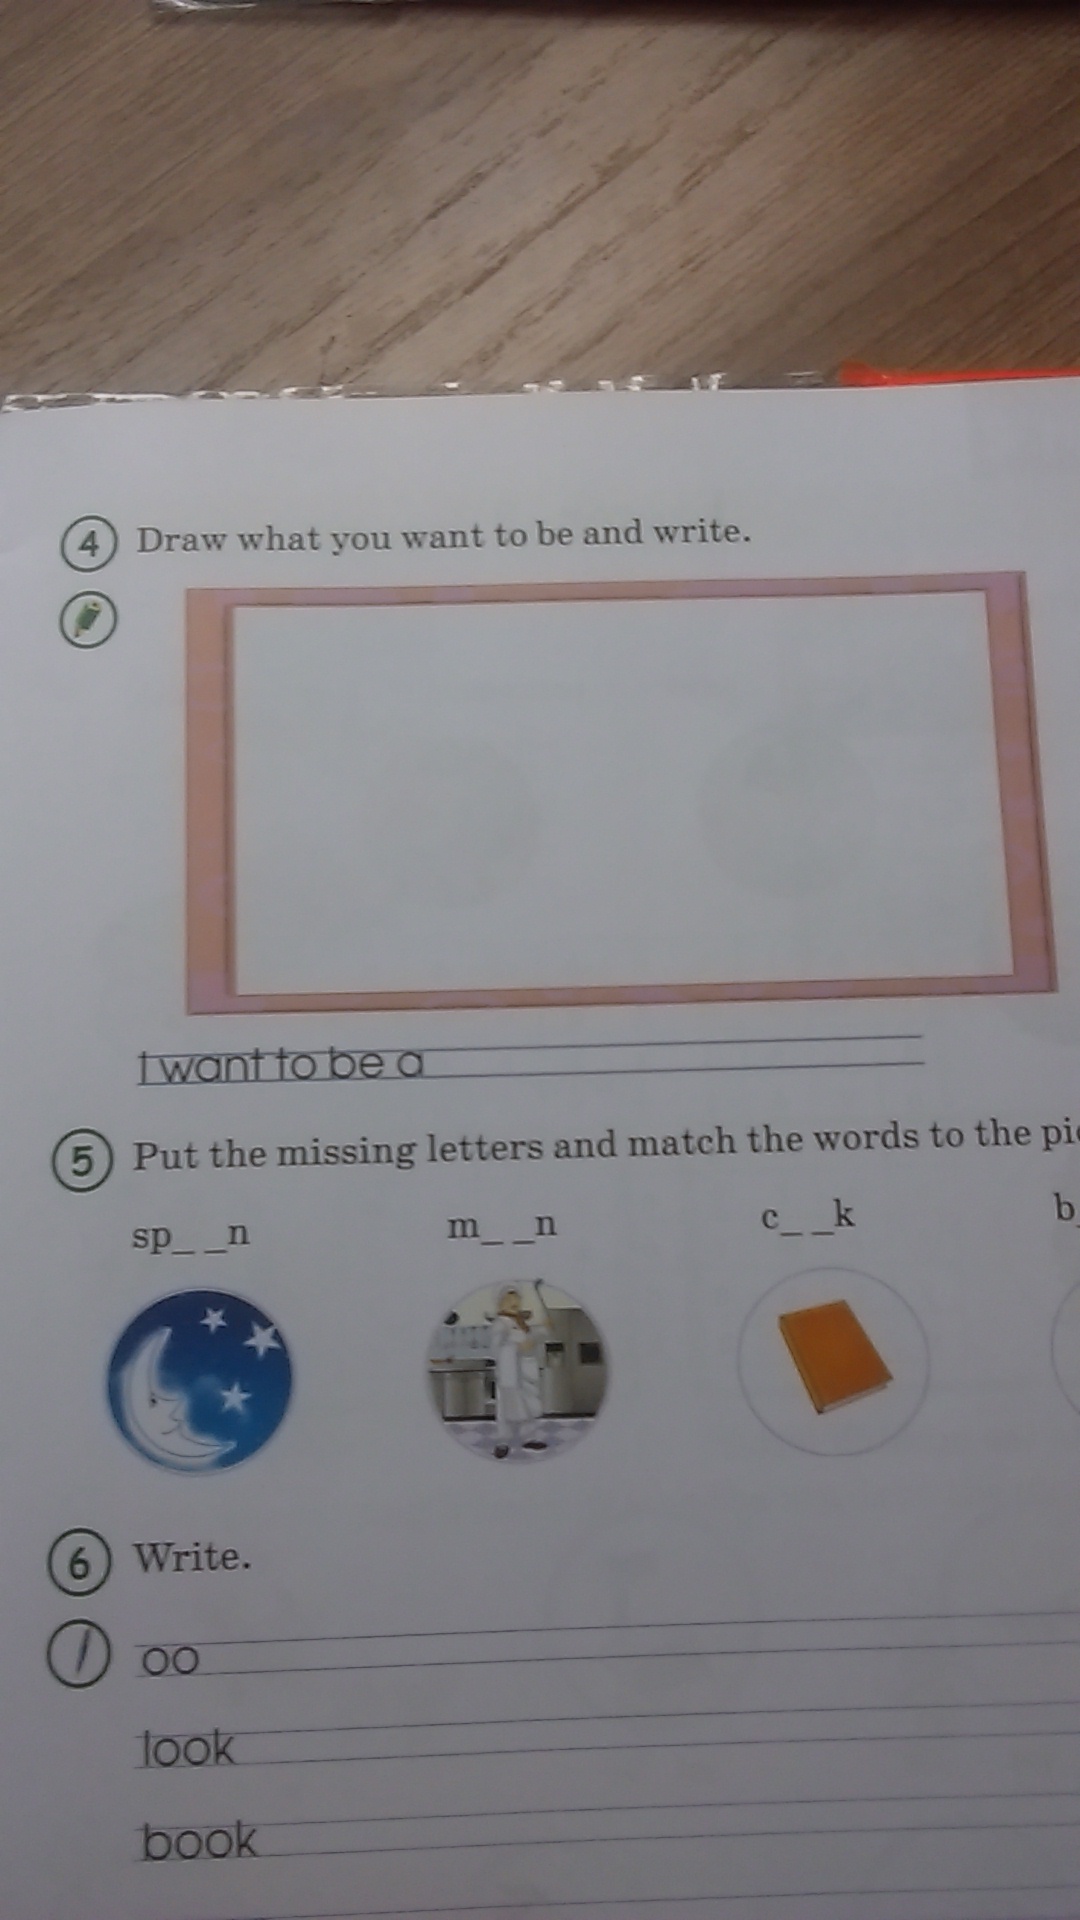 Пользуясь учебником напиши в квадратиках